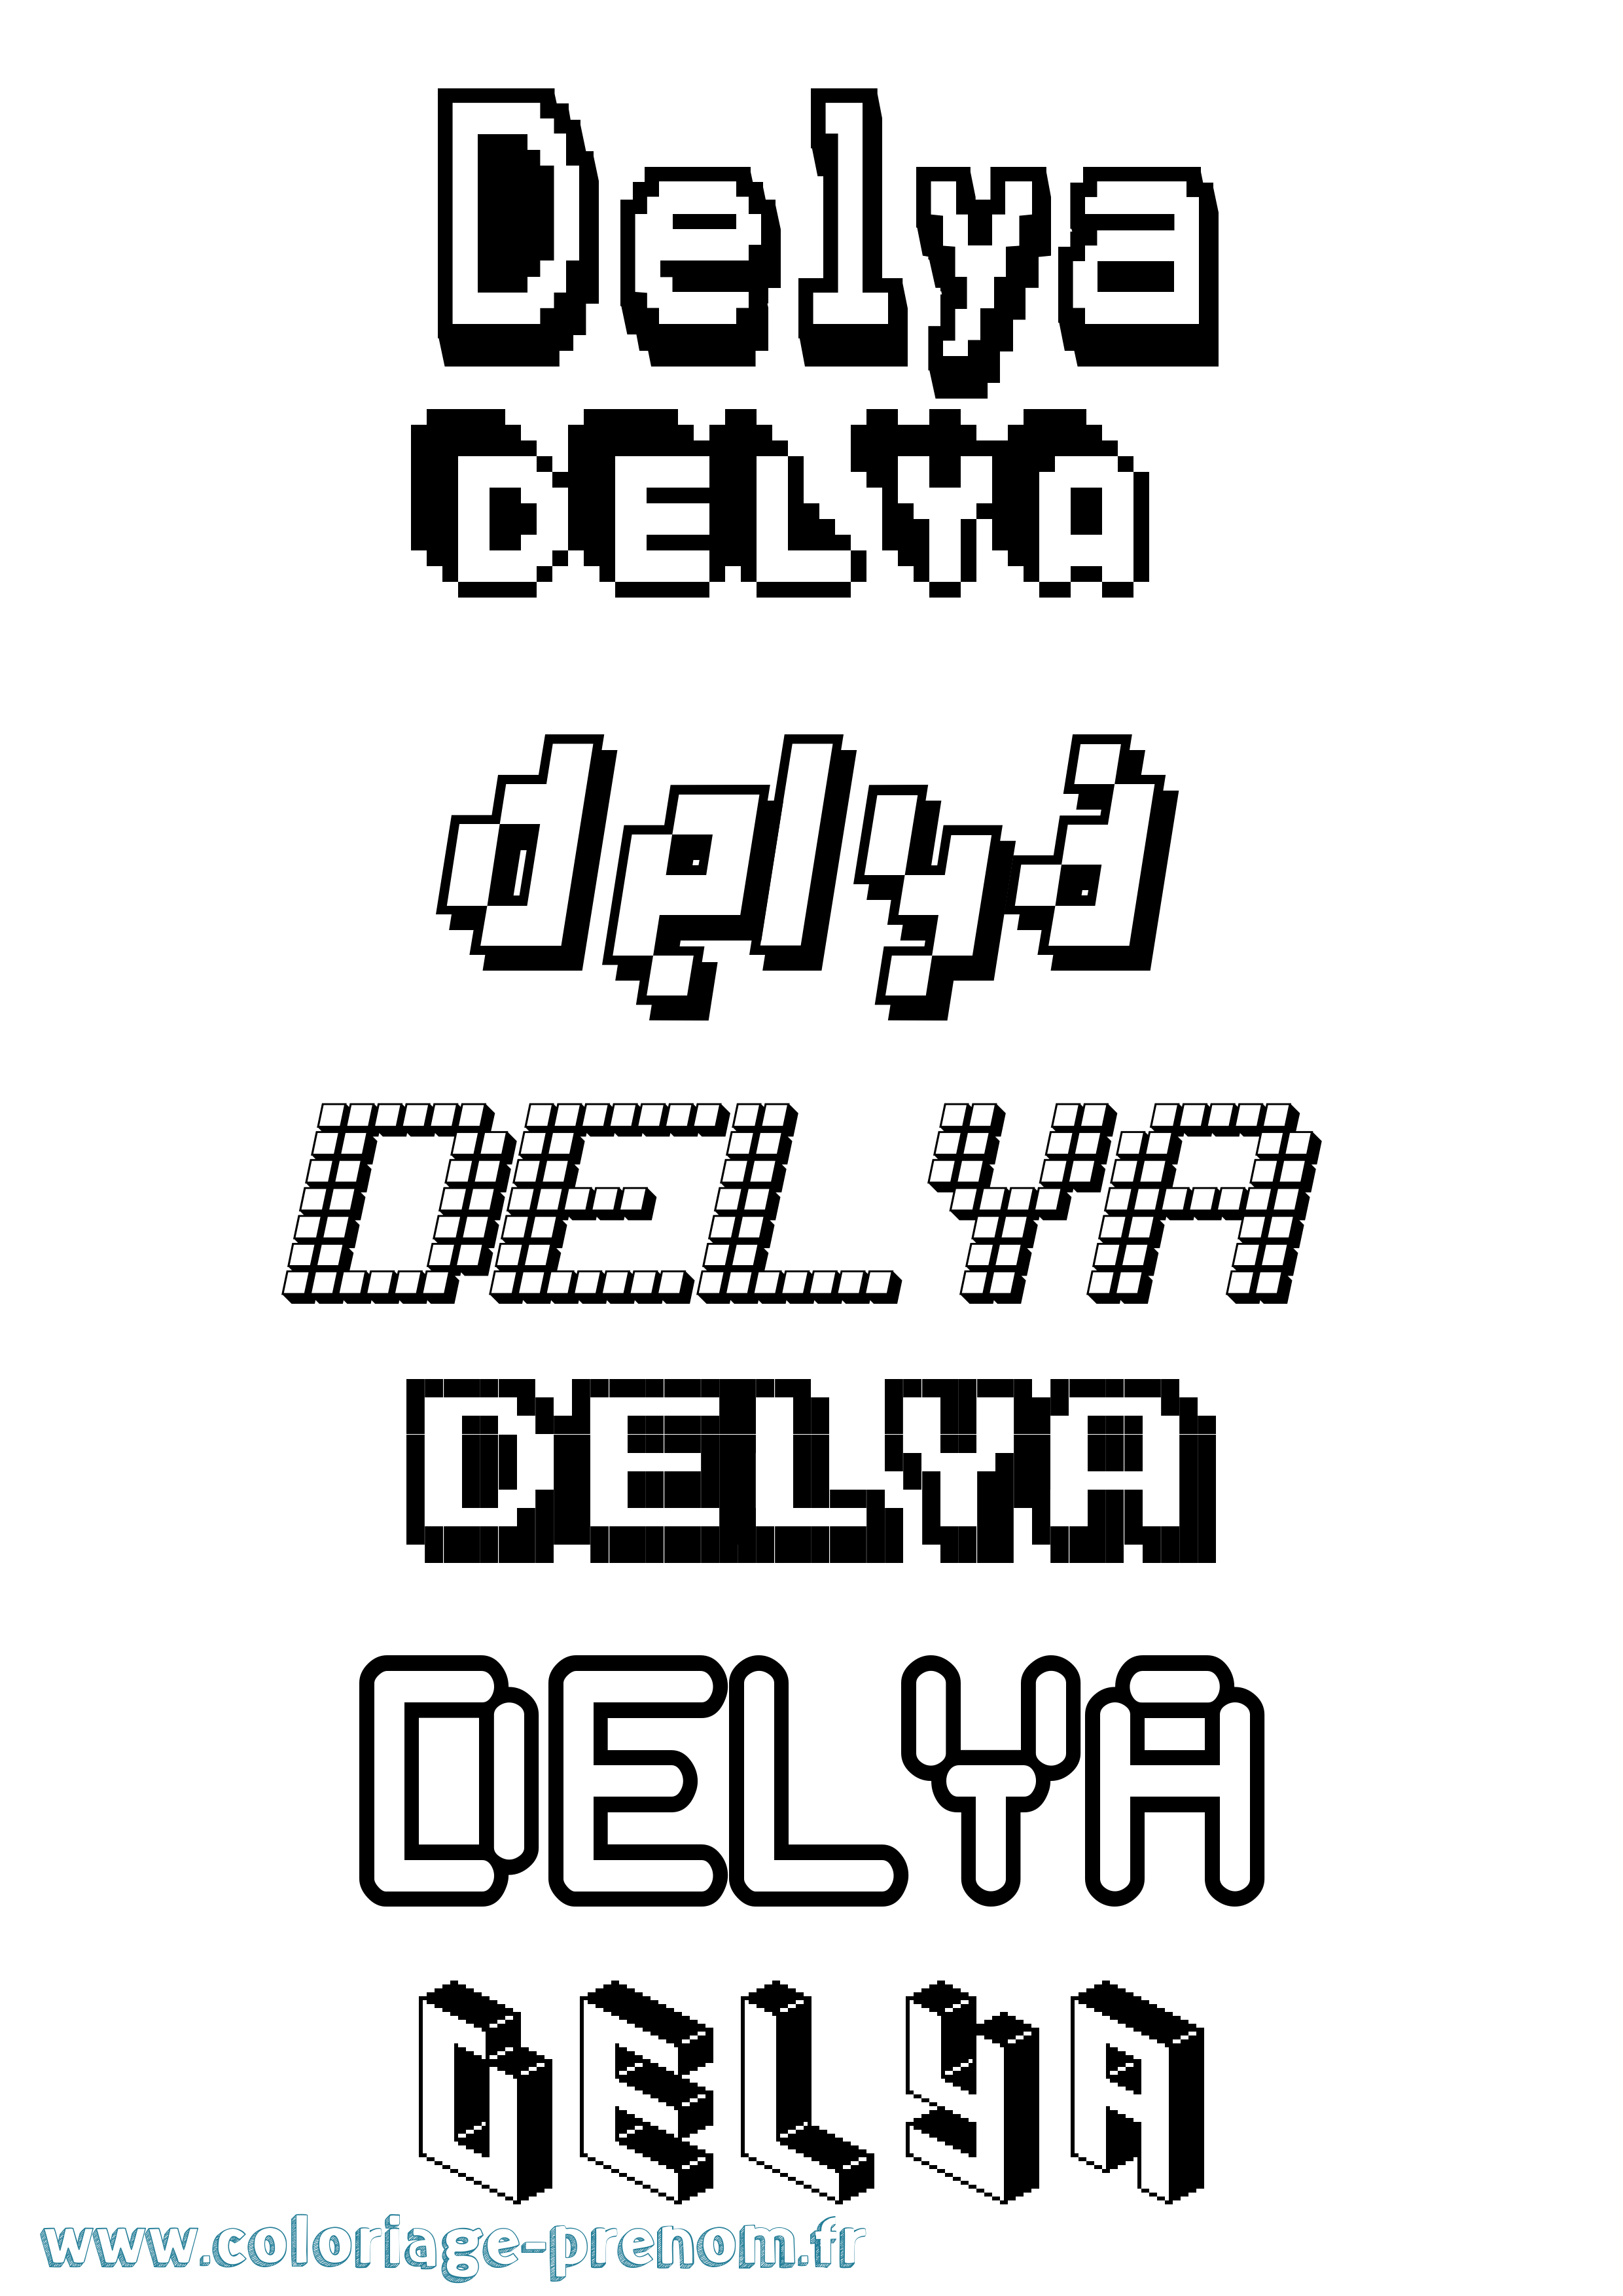 Coloriage prénom Delya Pixel